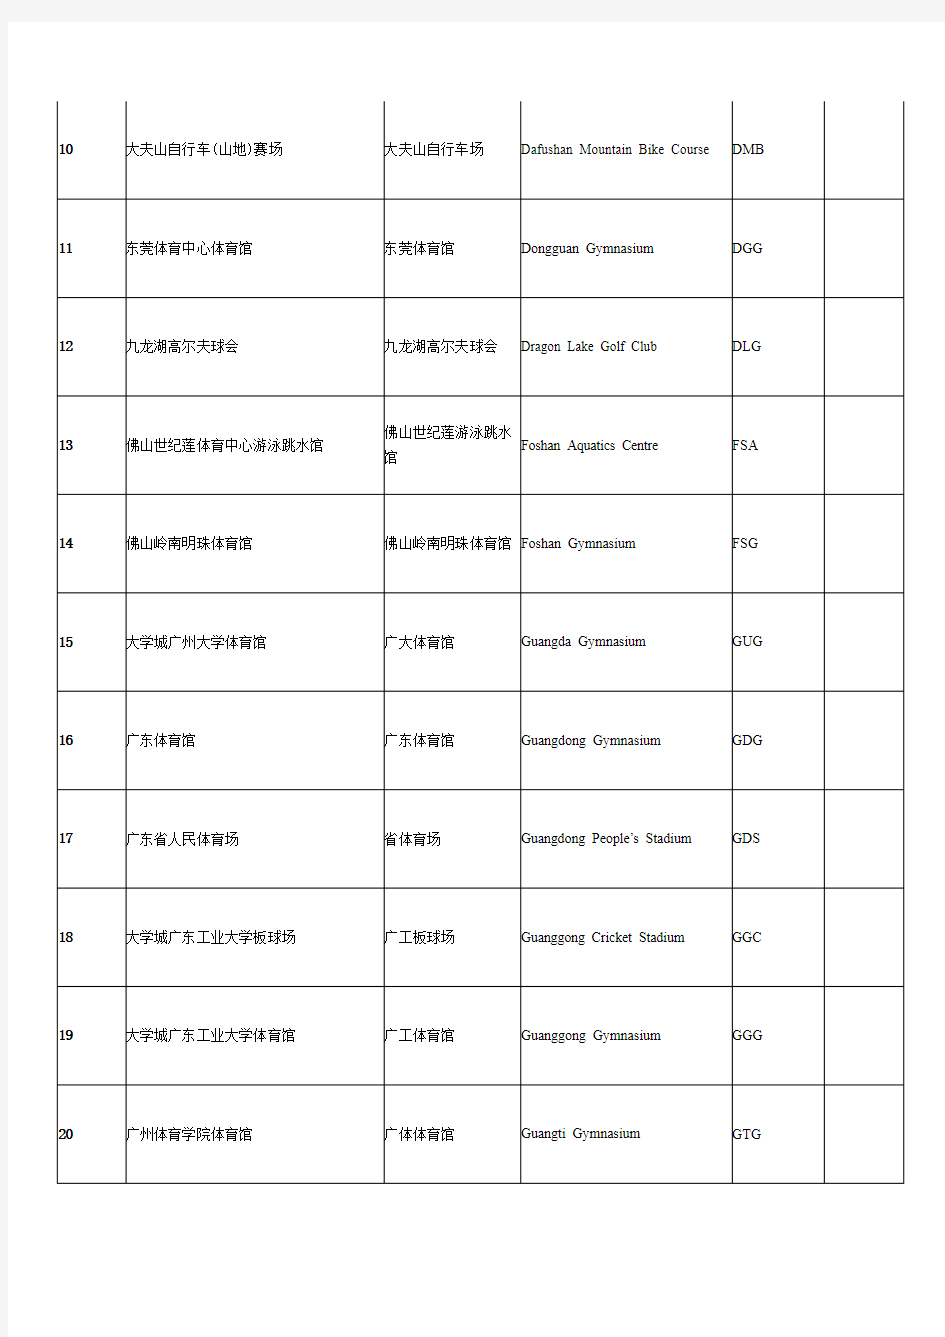 第16届广州亚运会竞赛场馆中英文简化名称一览表